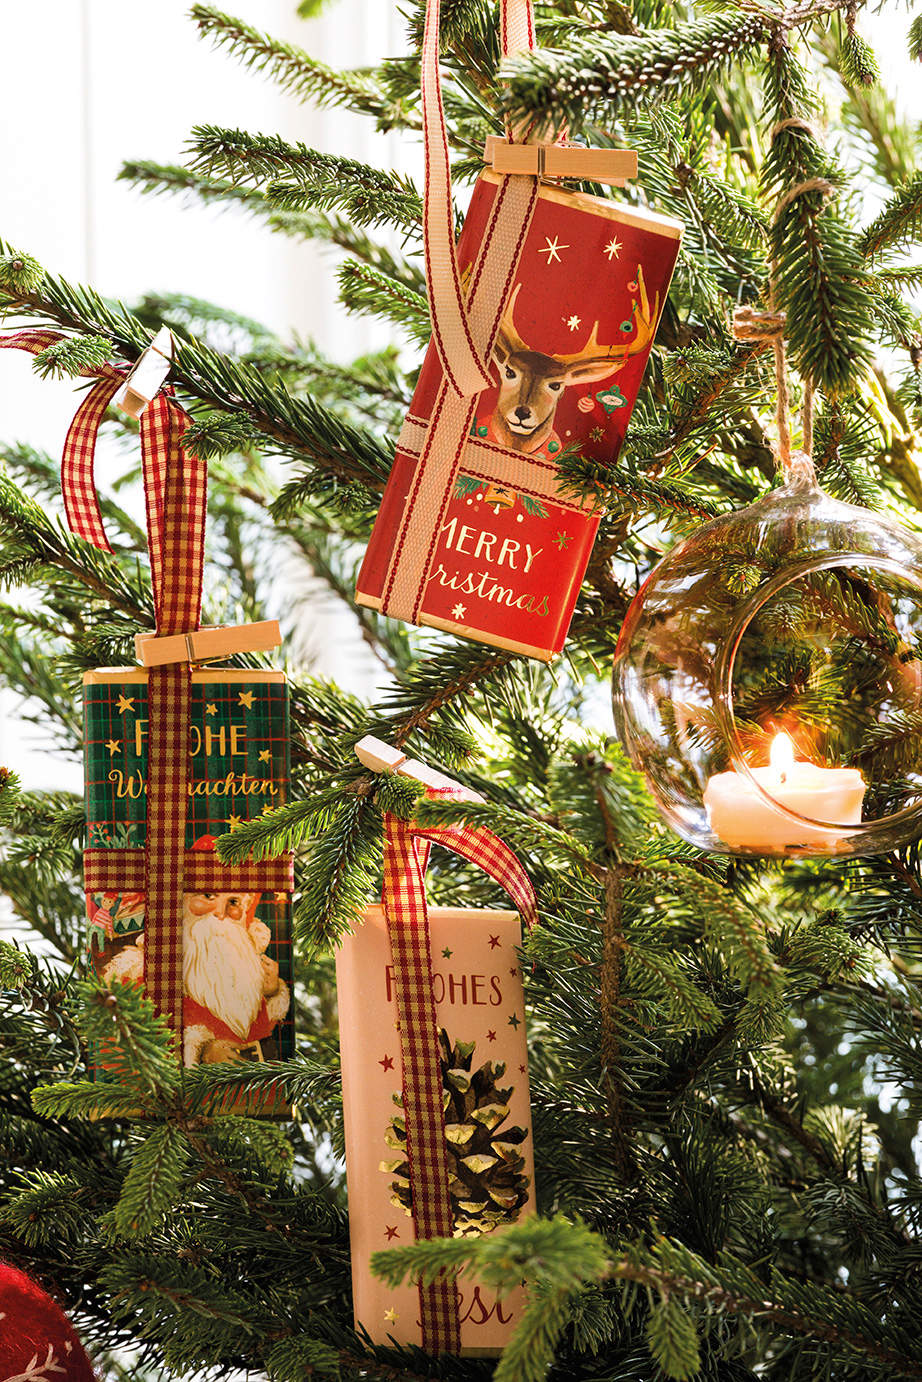 Árbol de Navidad decorado con tarjetas navideñas.